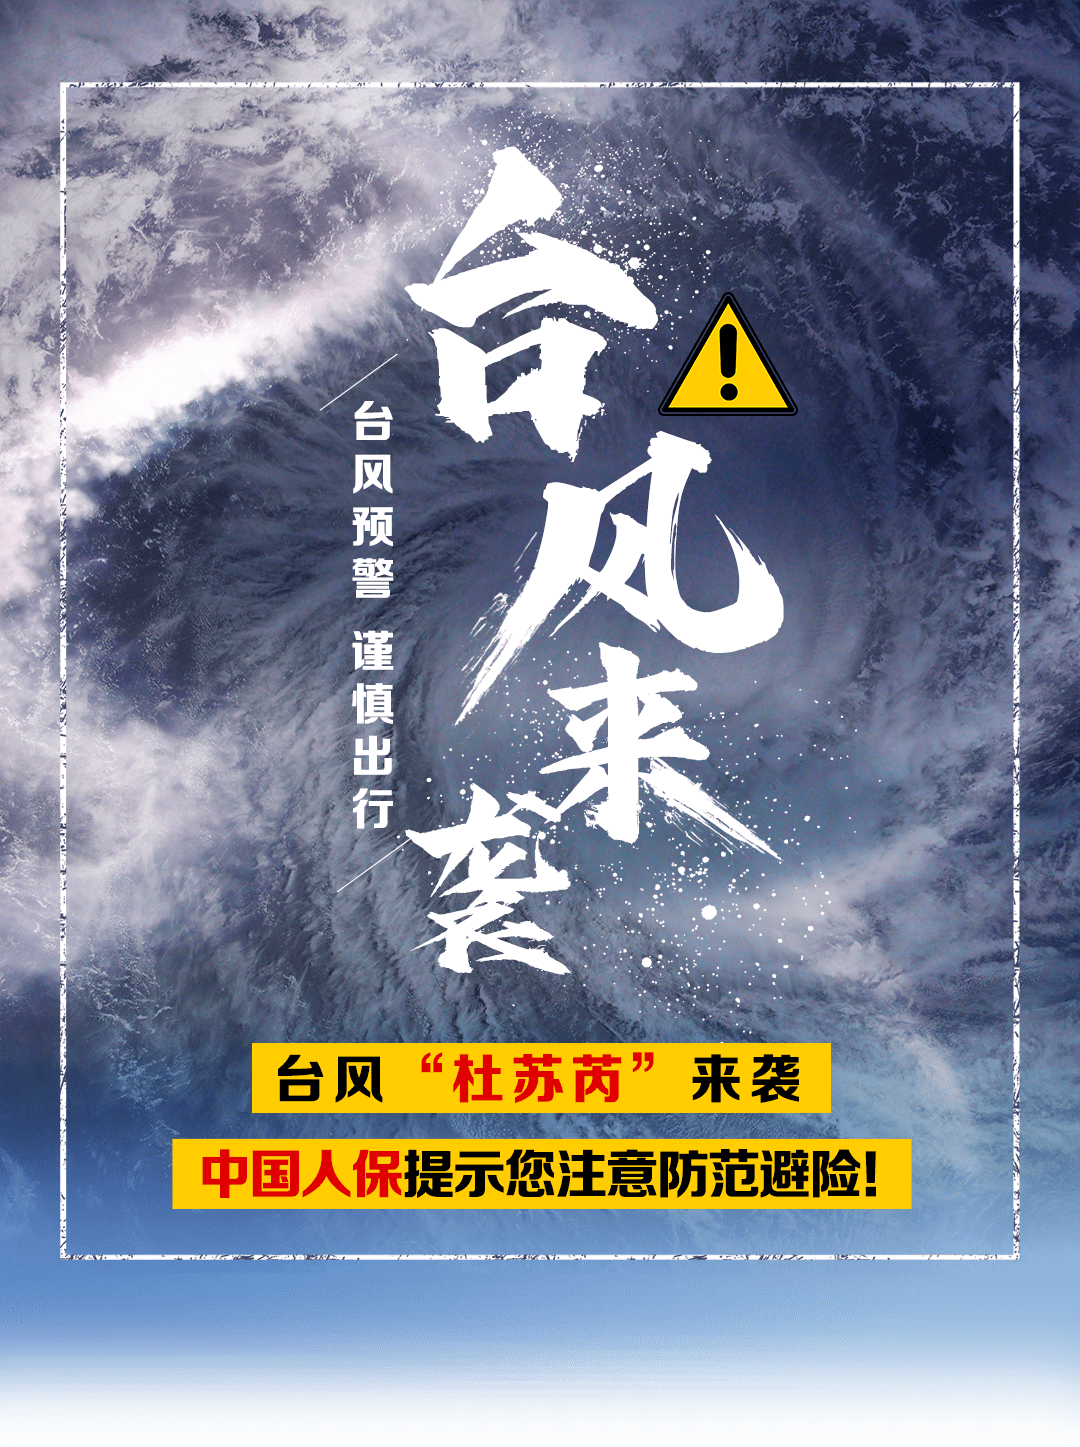 台风警报-鑫电电力助您安全用电